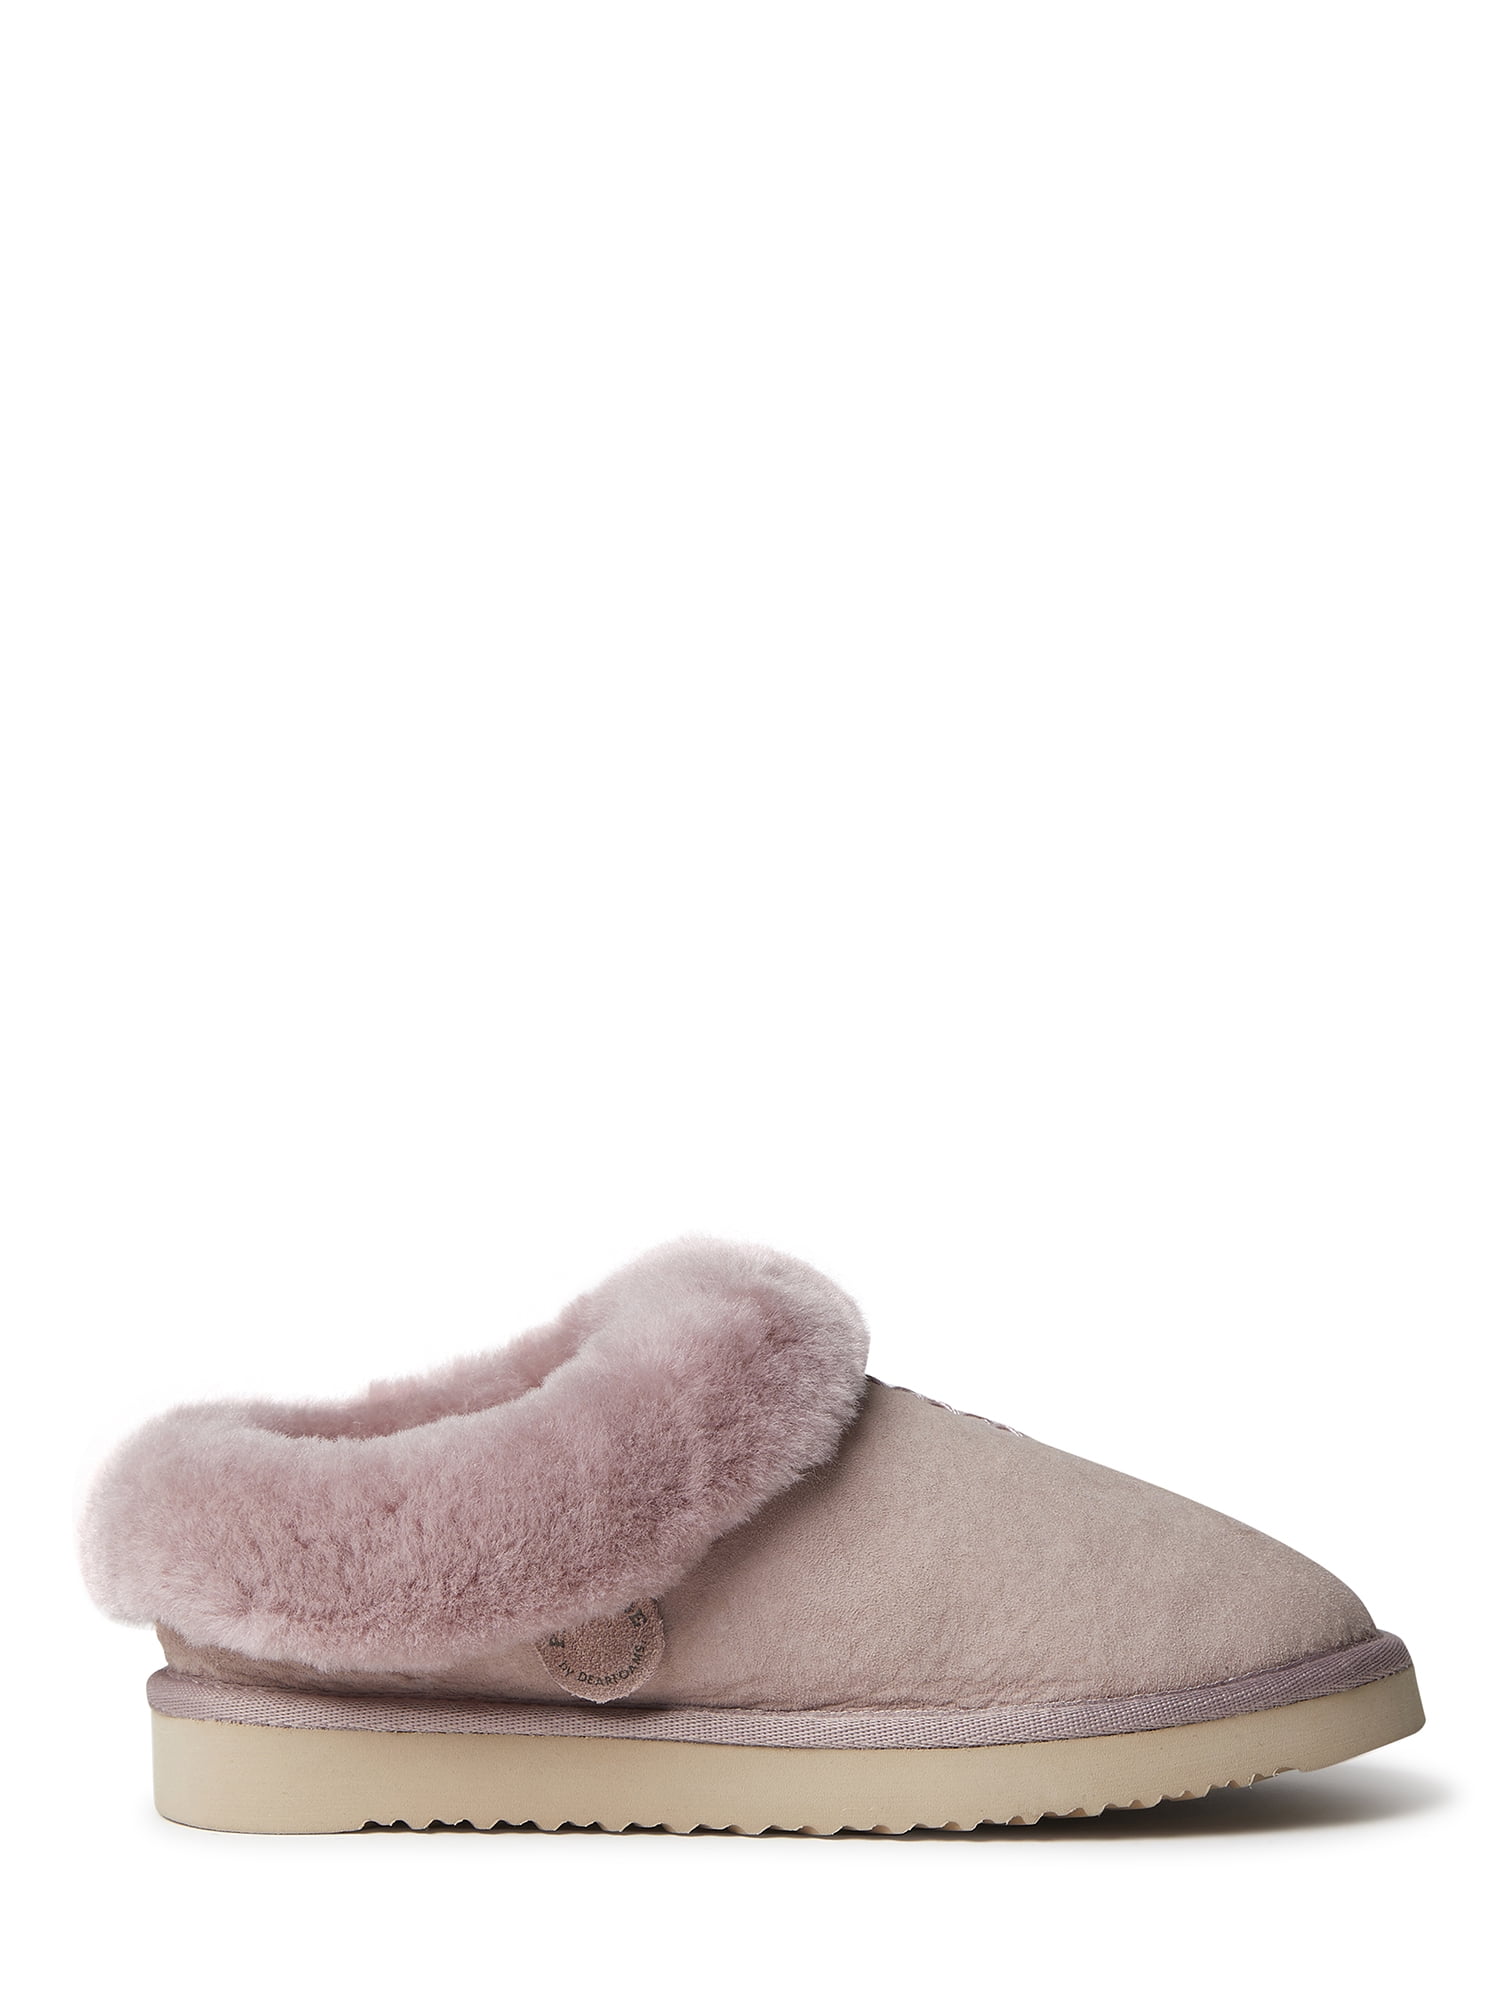 Dearfoams Cozy Comfort Teddy Slide Slippers | Slide slippers, Slippers,  Comforters cozy